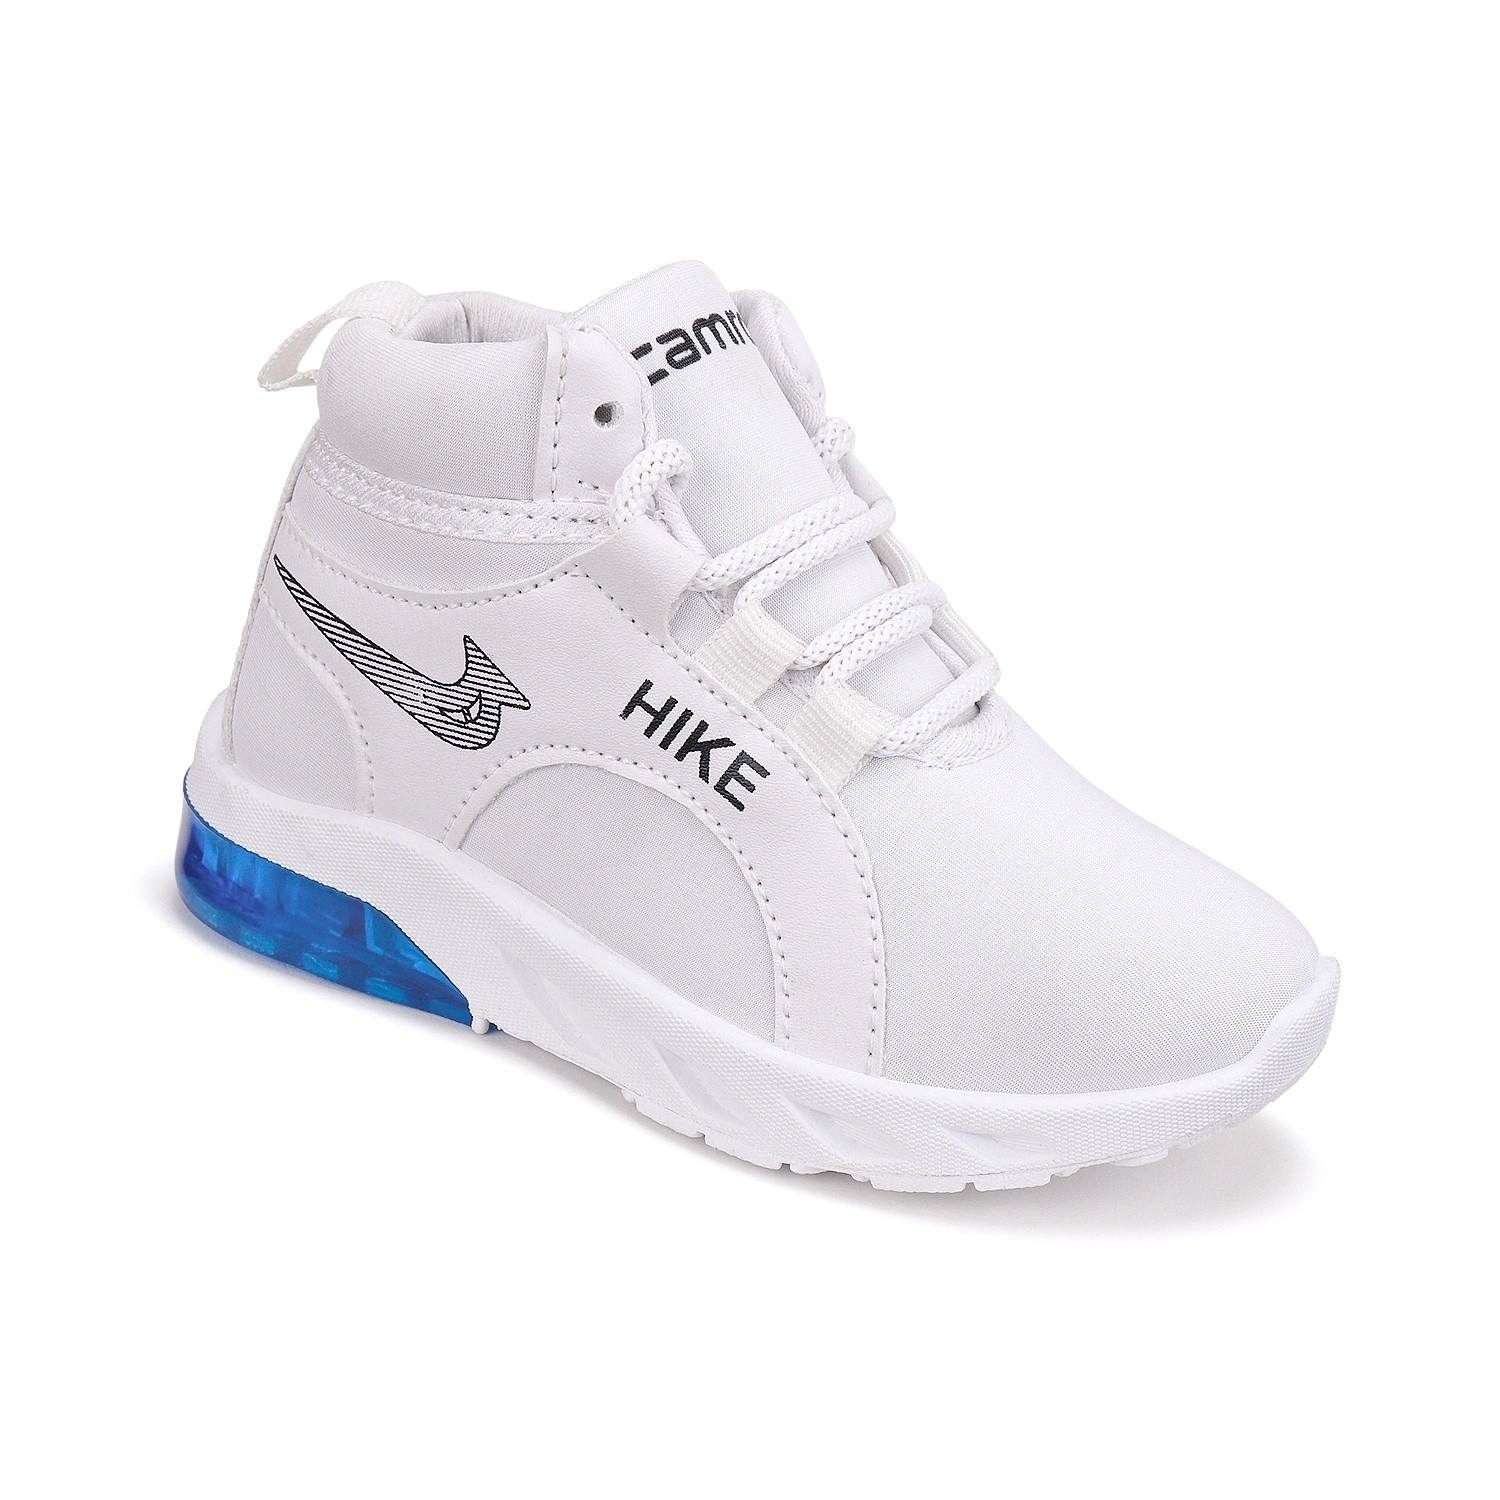 Camro LED 141 White/R.Blue Kids Light Shoe